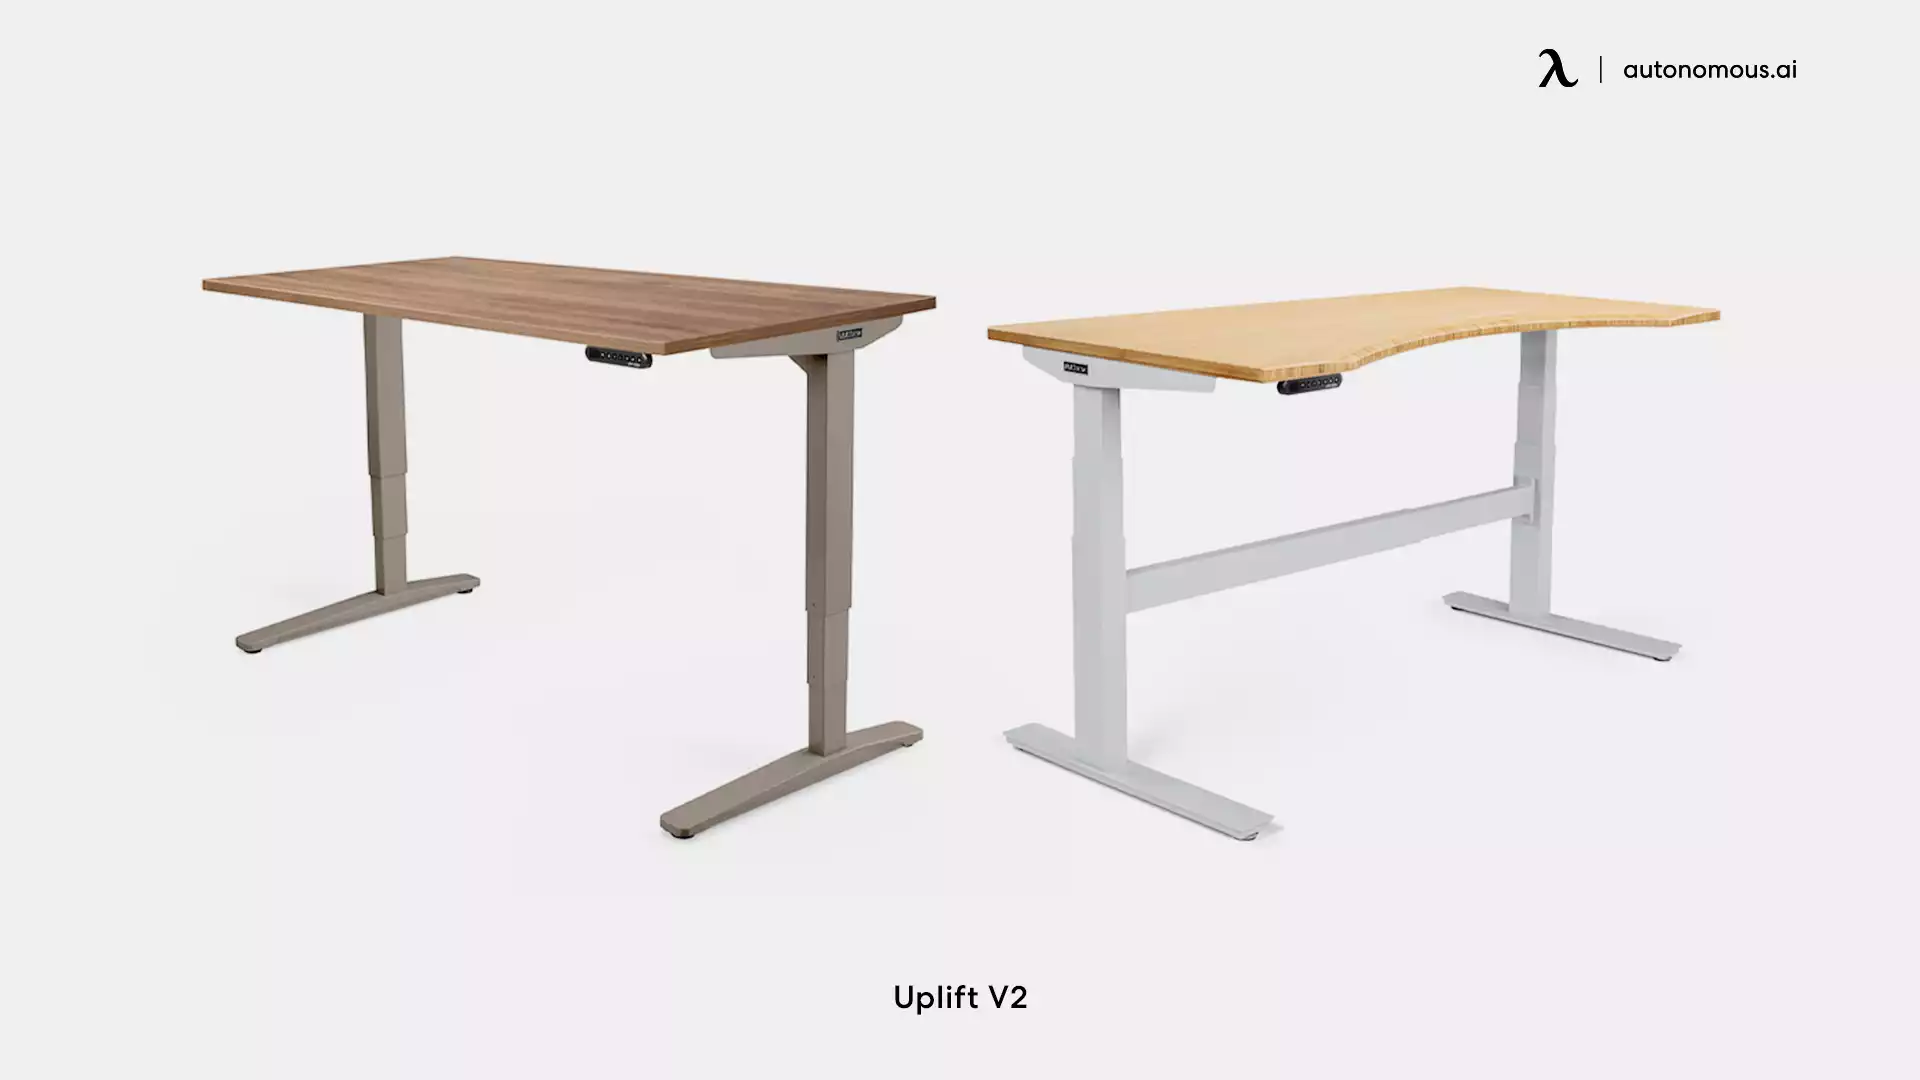 Uplift v2 Commercial Standing Desk